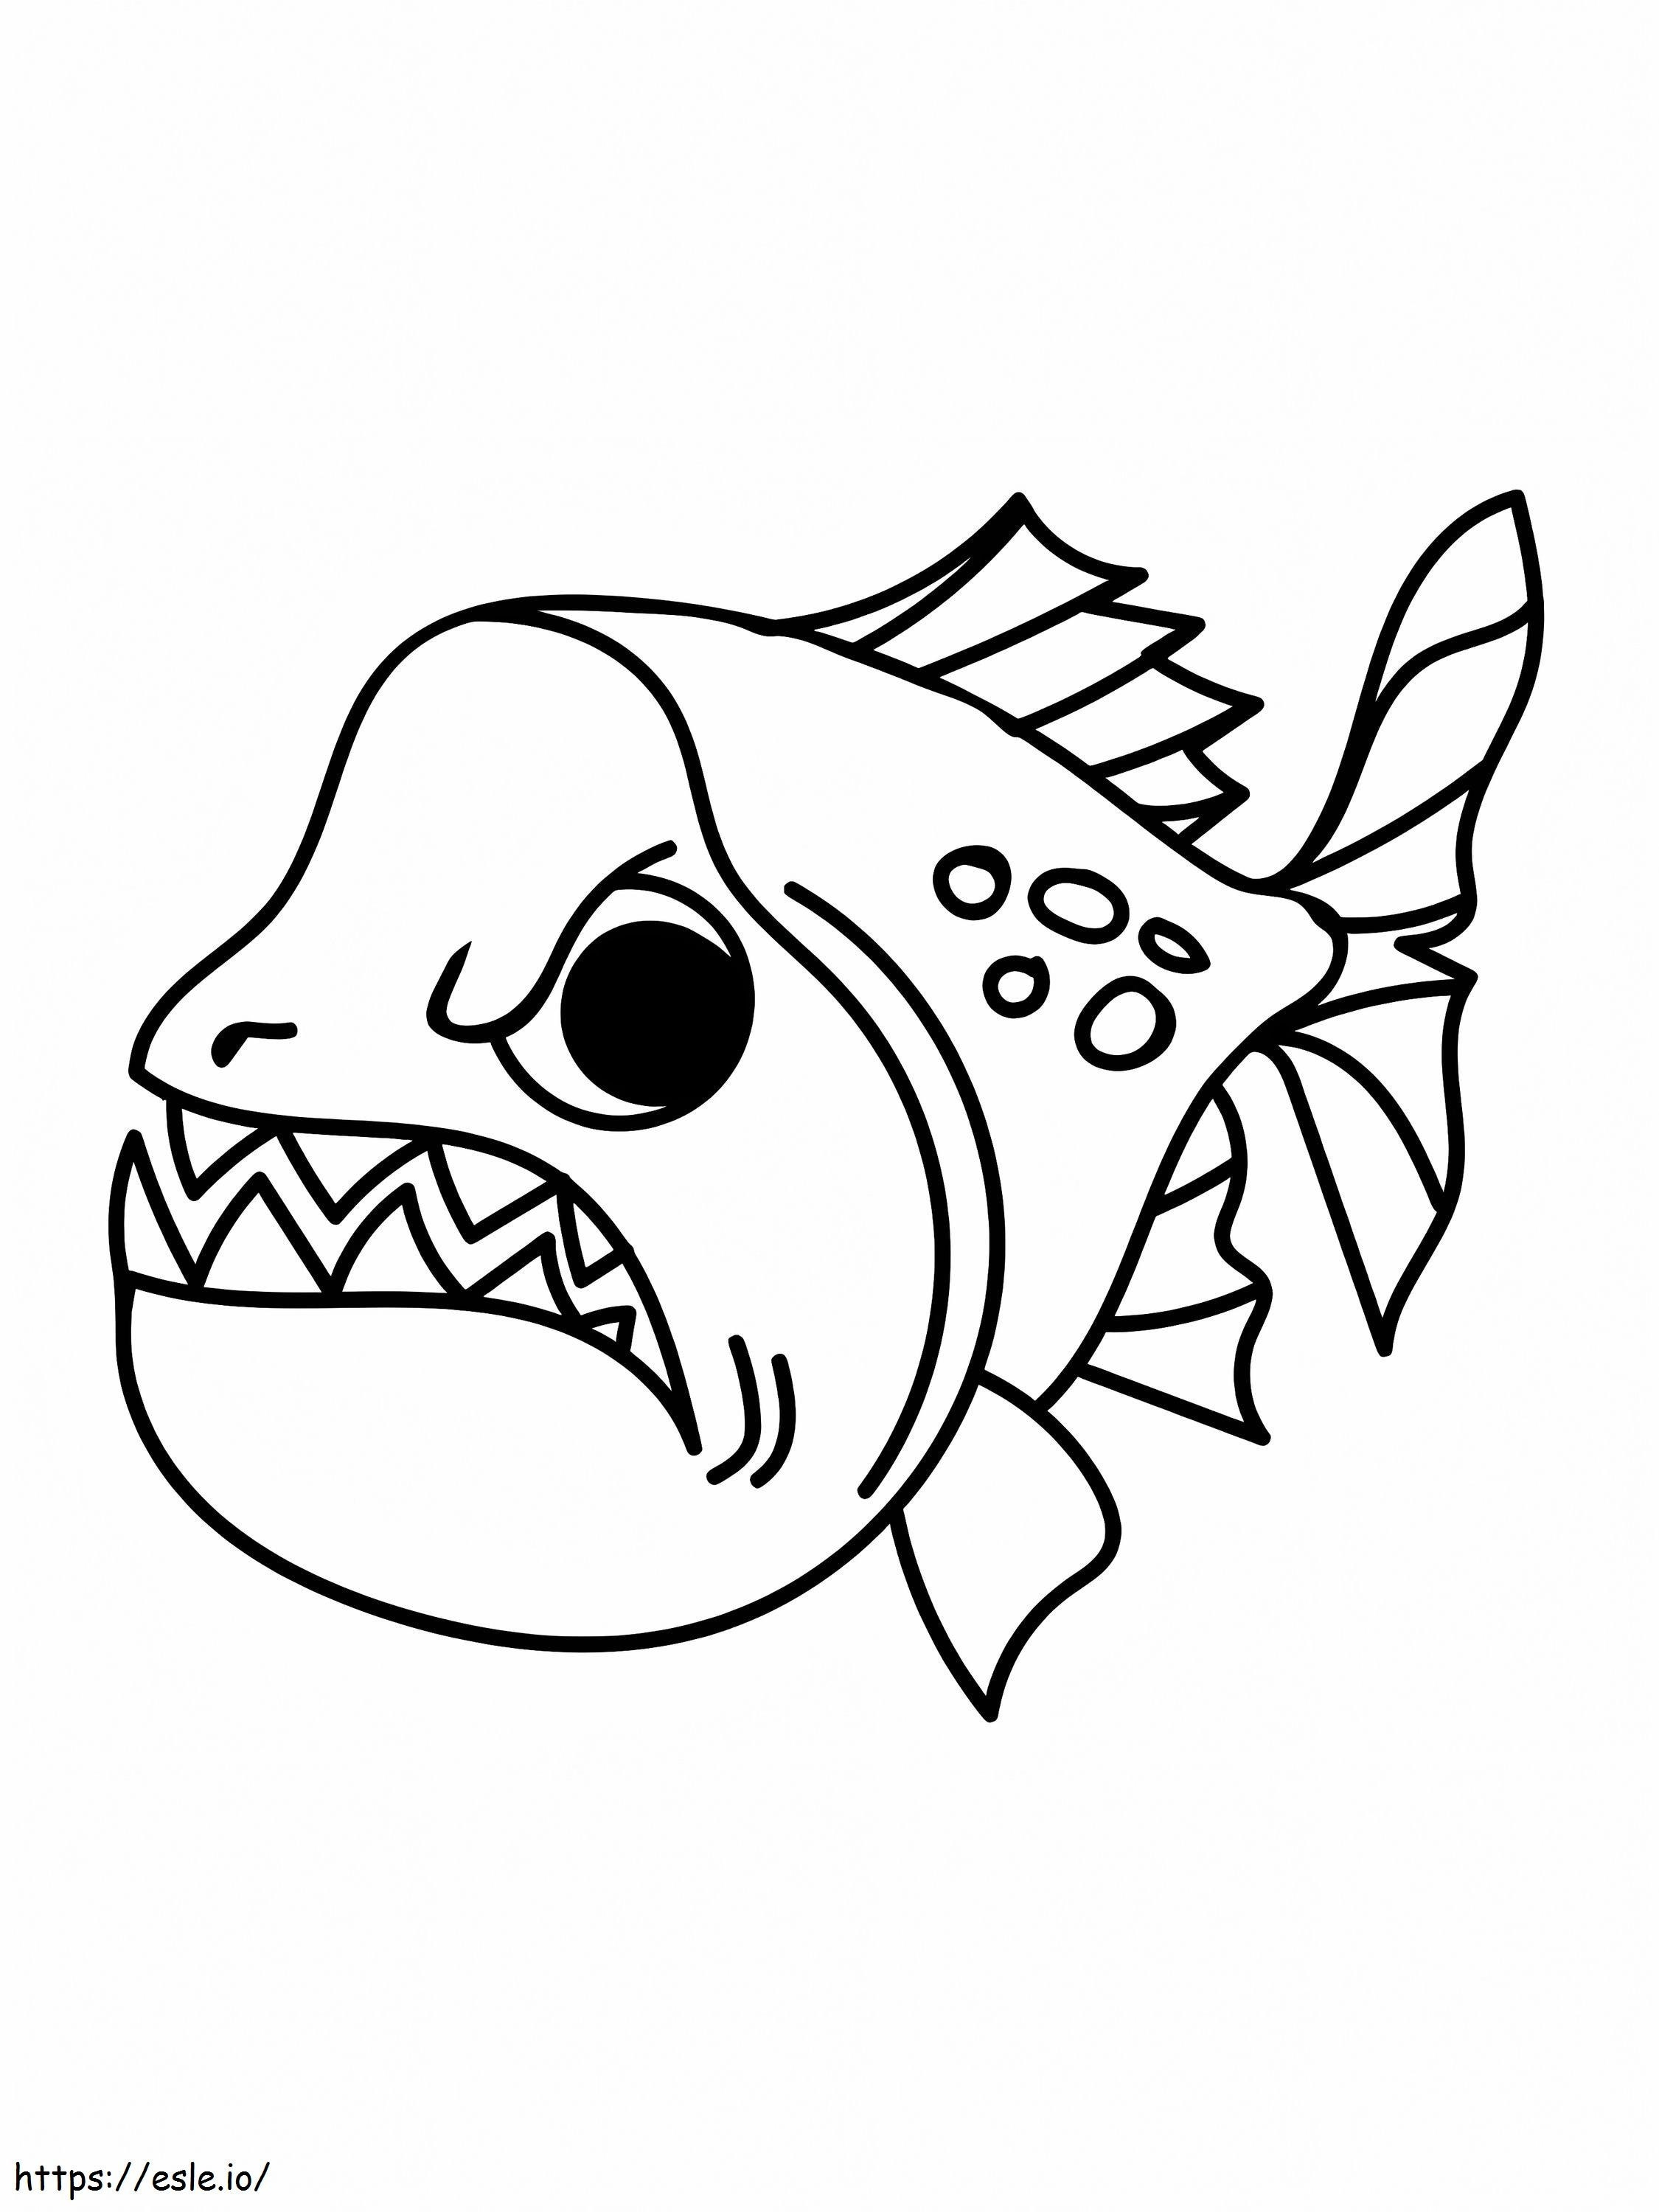 Wściekła ryba pirania kolorowanka